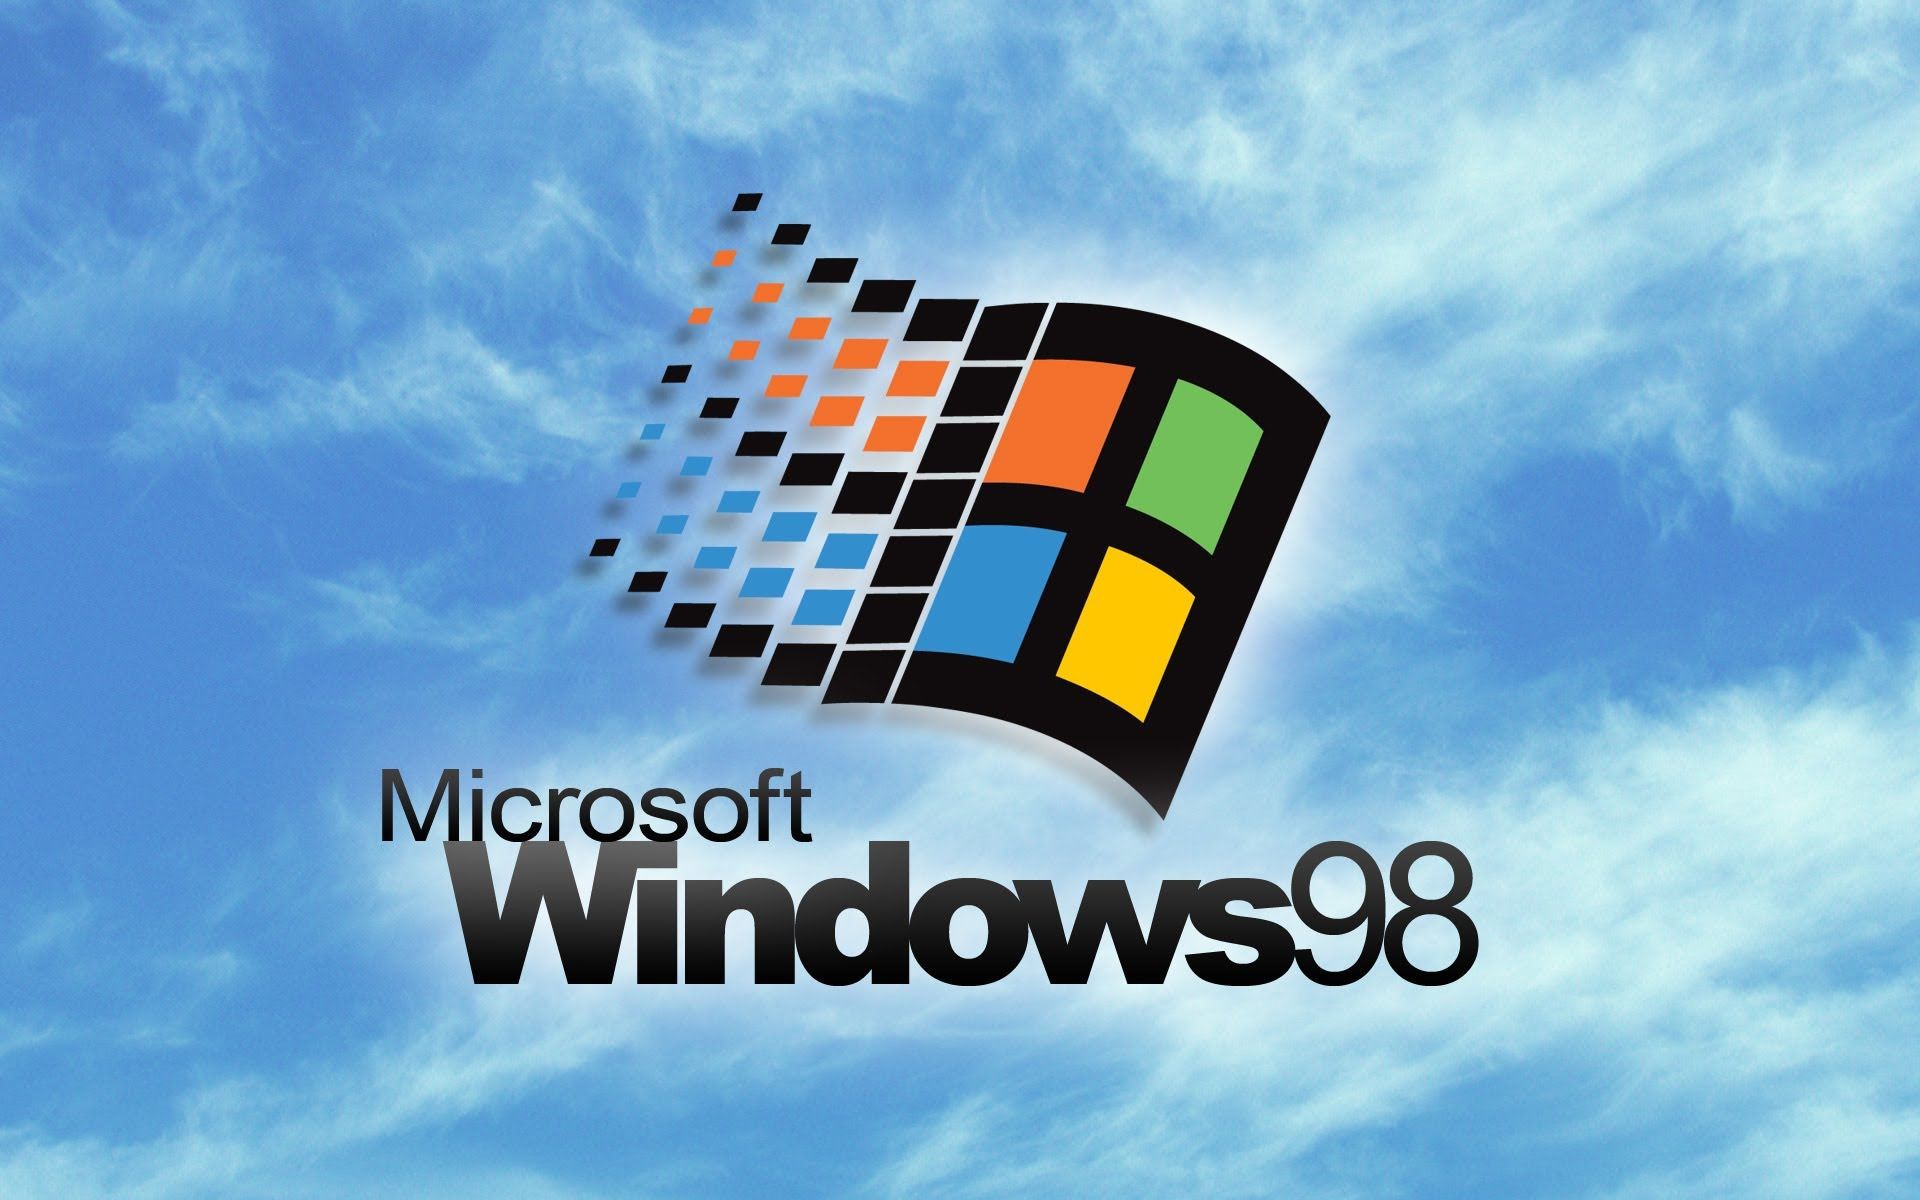 Sự đơn giản và trang nhã của hình nền Windows 98 khiến nó trở thành một trong những lựa chọn phổ biến nhất cho các thiết bị điện tử hiện nay. Đừng bỏ lỡ cơ hội được chiêm ngưỡng tấm hình nền đẹp này.